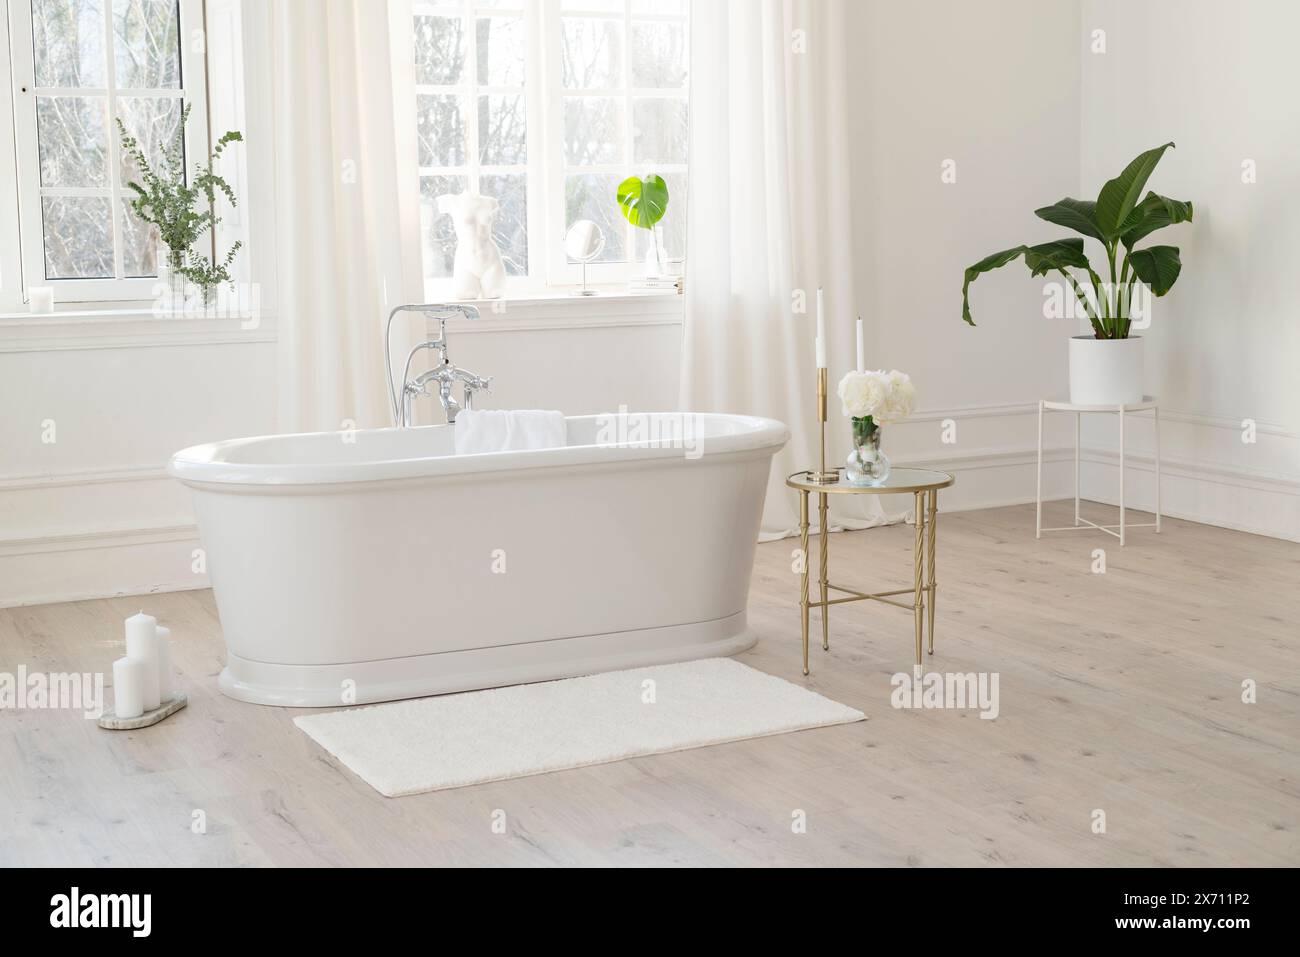 Weißes, modernes Badezimmer mit silbernen Armaturen, großen, sonnigen Fenstern, Dekorationen und Pflanzen. Innenraumkonzept. Weicher selektiver Fokus Stockfoto